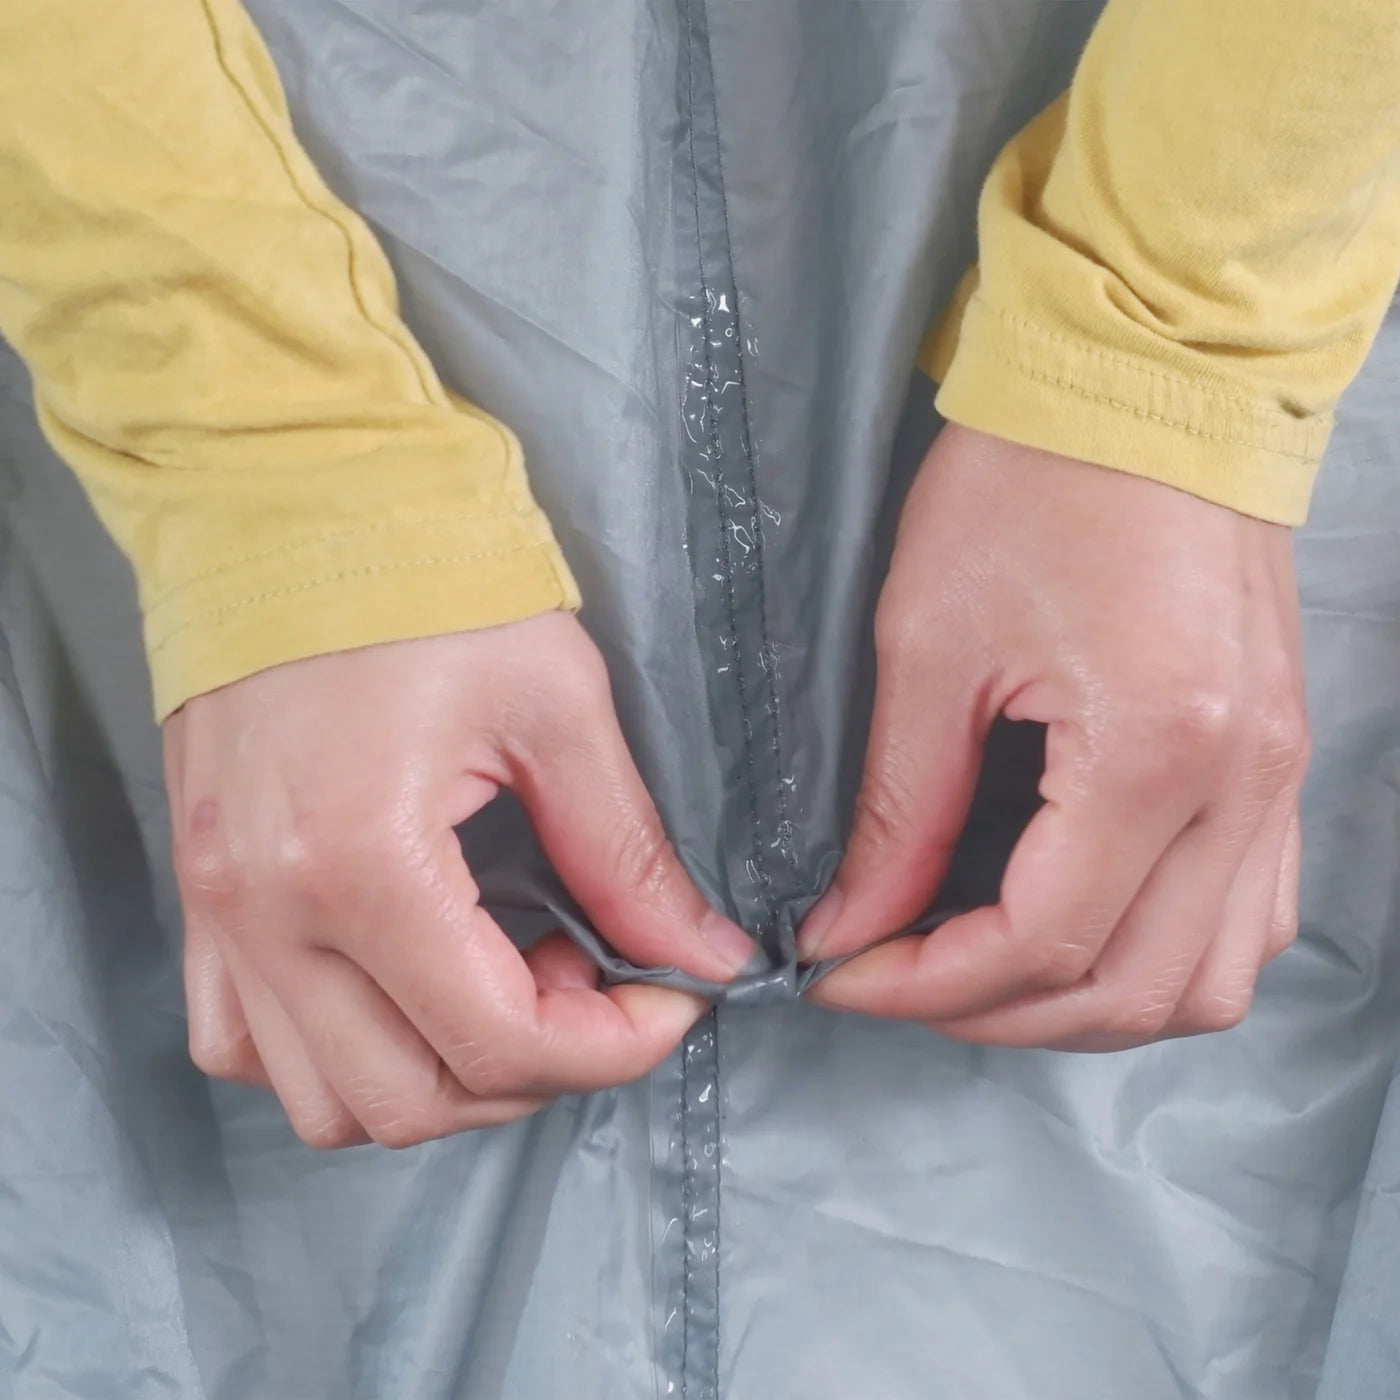 GearAid - Seam Grip SIL™ Silicone Tent Sealant